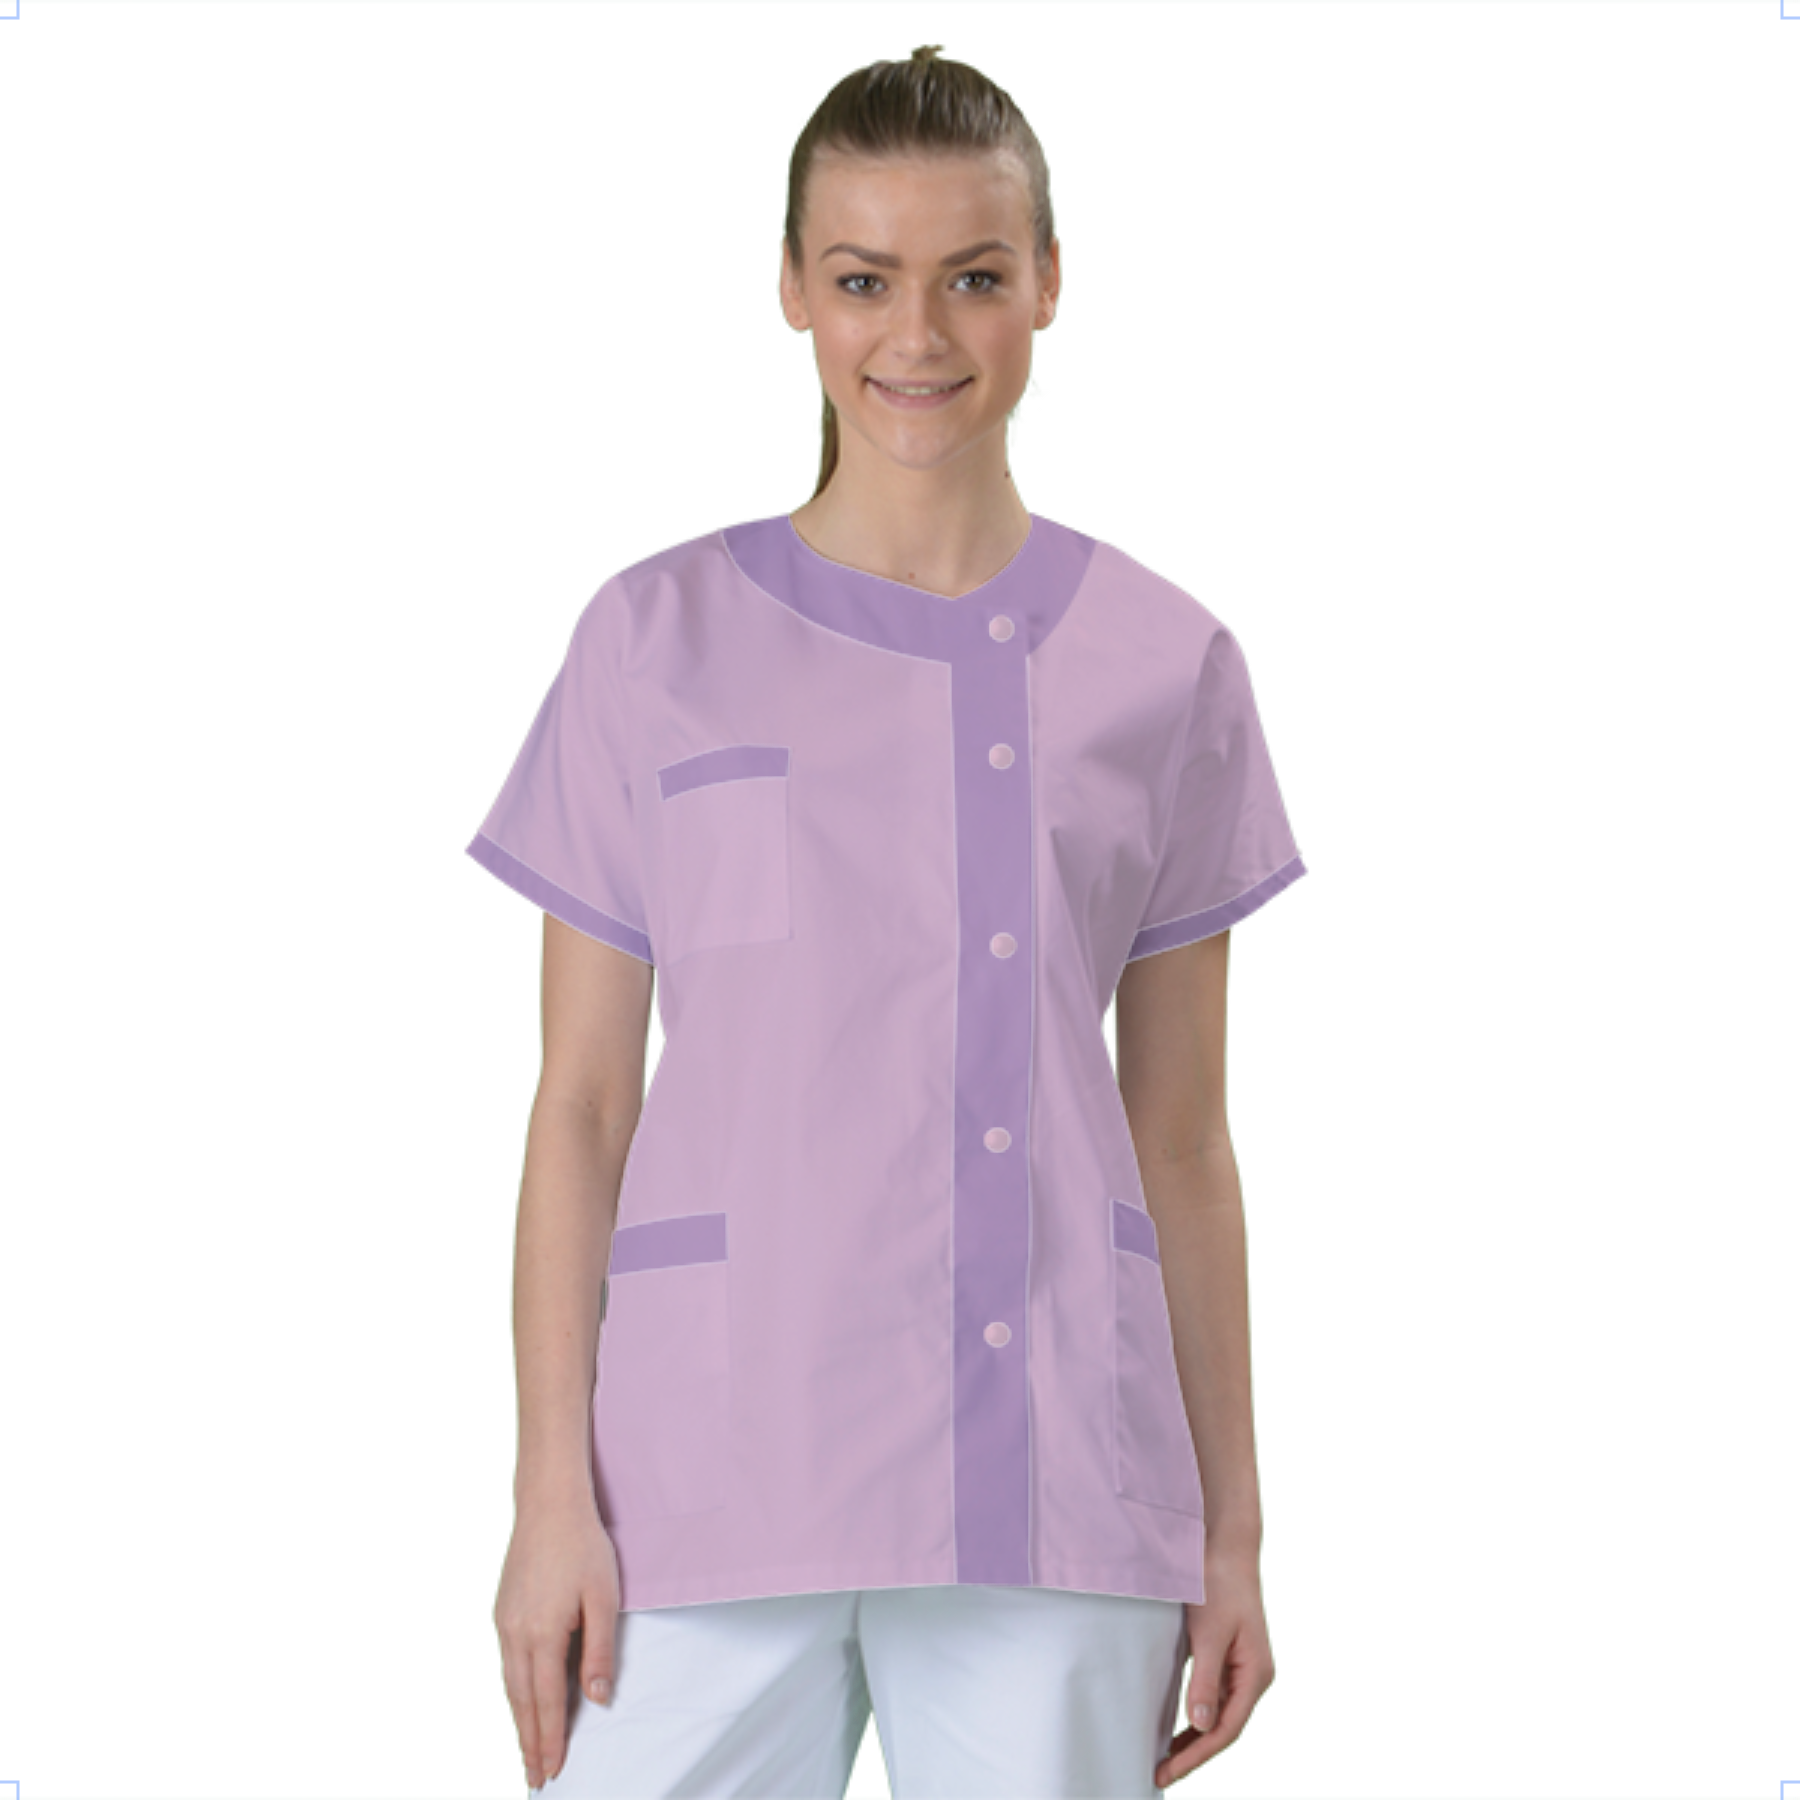 blouse-medicale-col-carre-a-personnaliser acheté - par Charles - le 27-12-2018